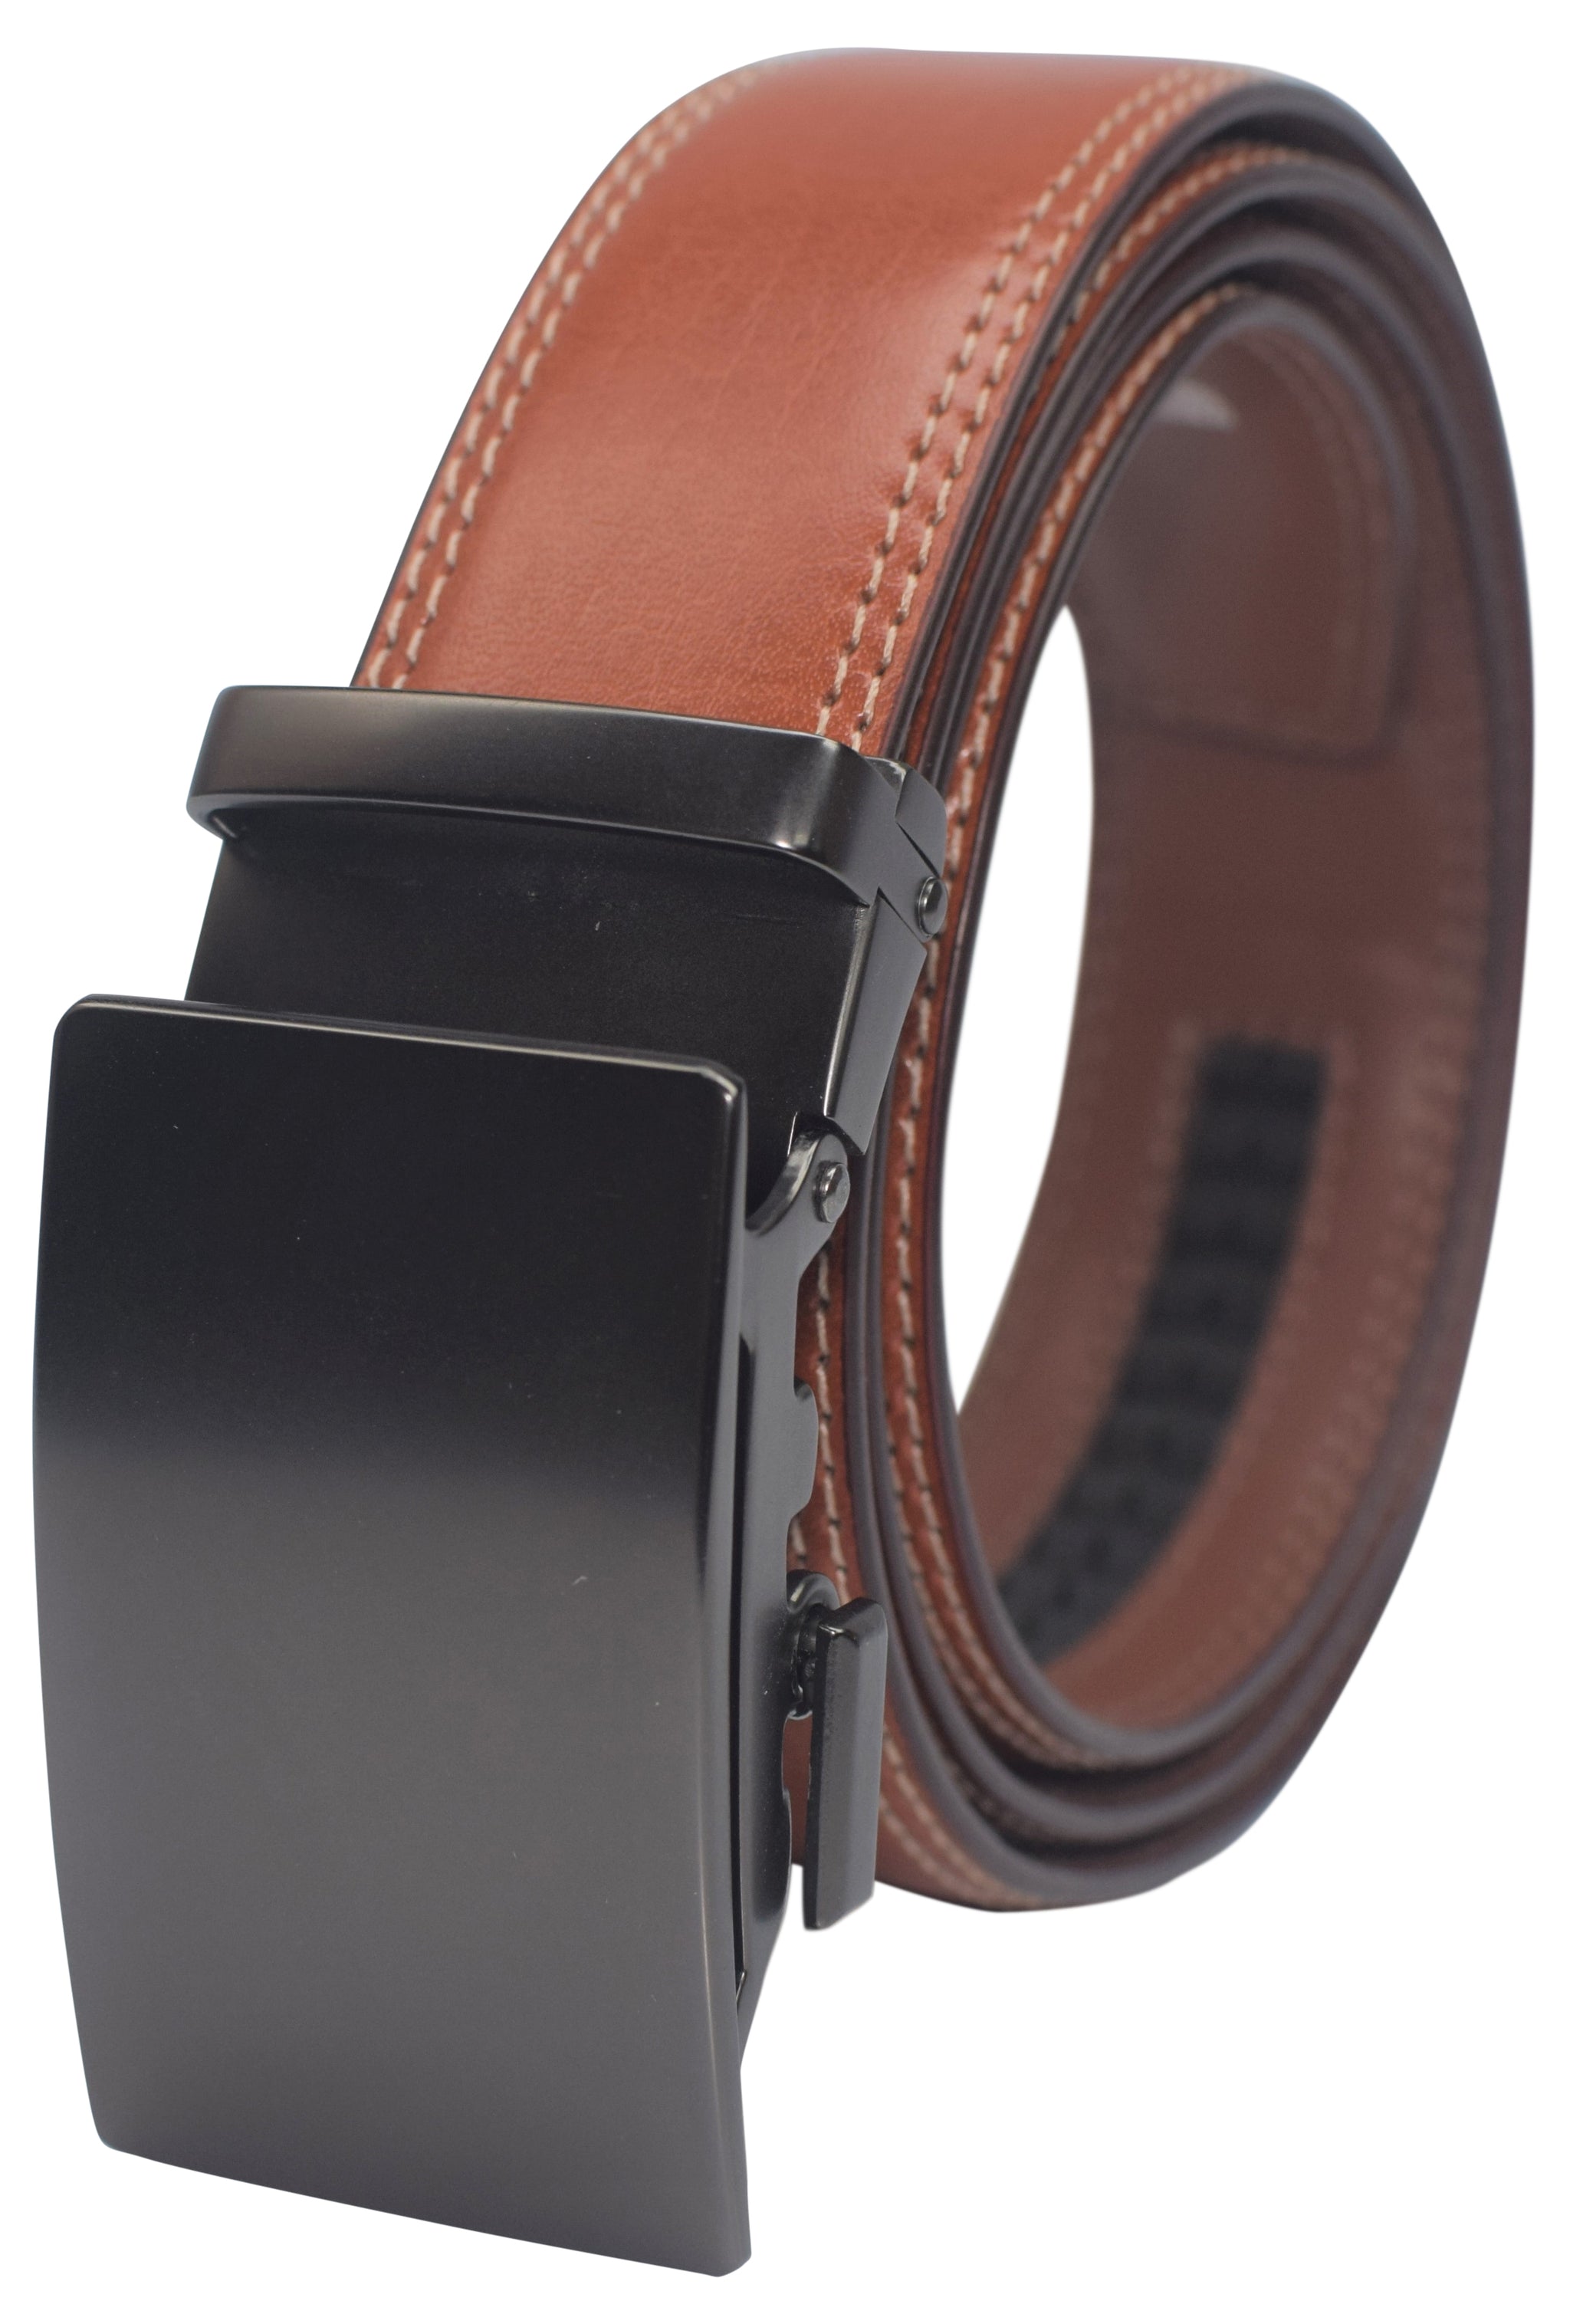 Men's Genuine Leather Belt Automatic Buckle Business Suit Waist